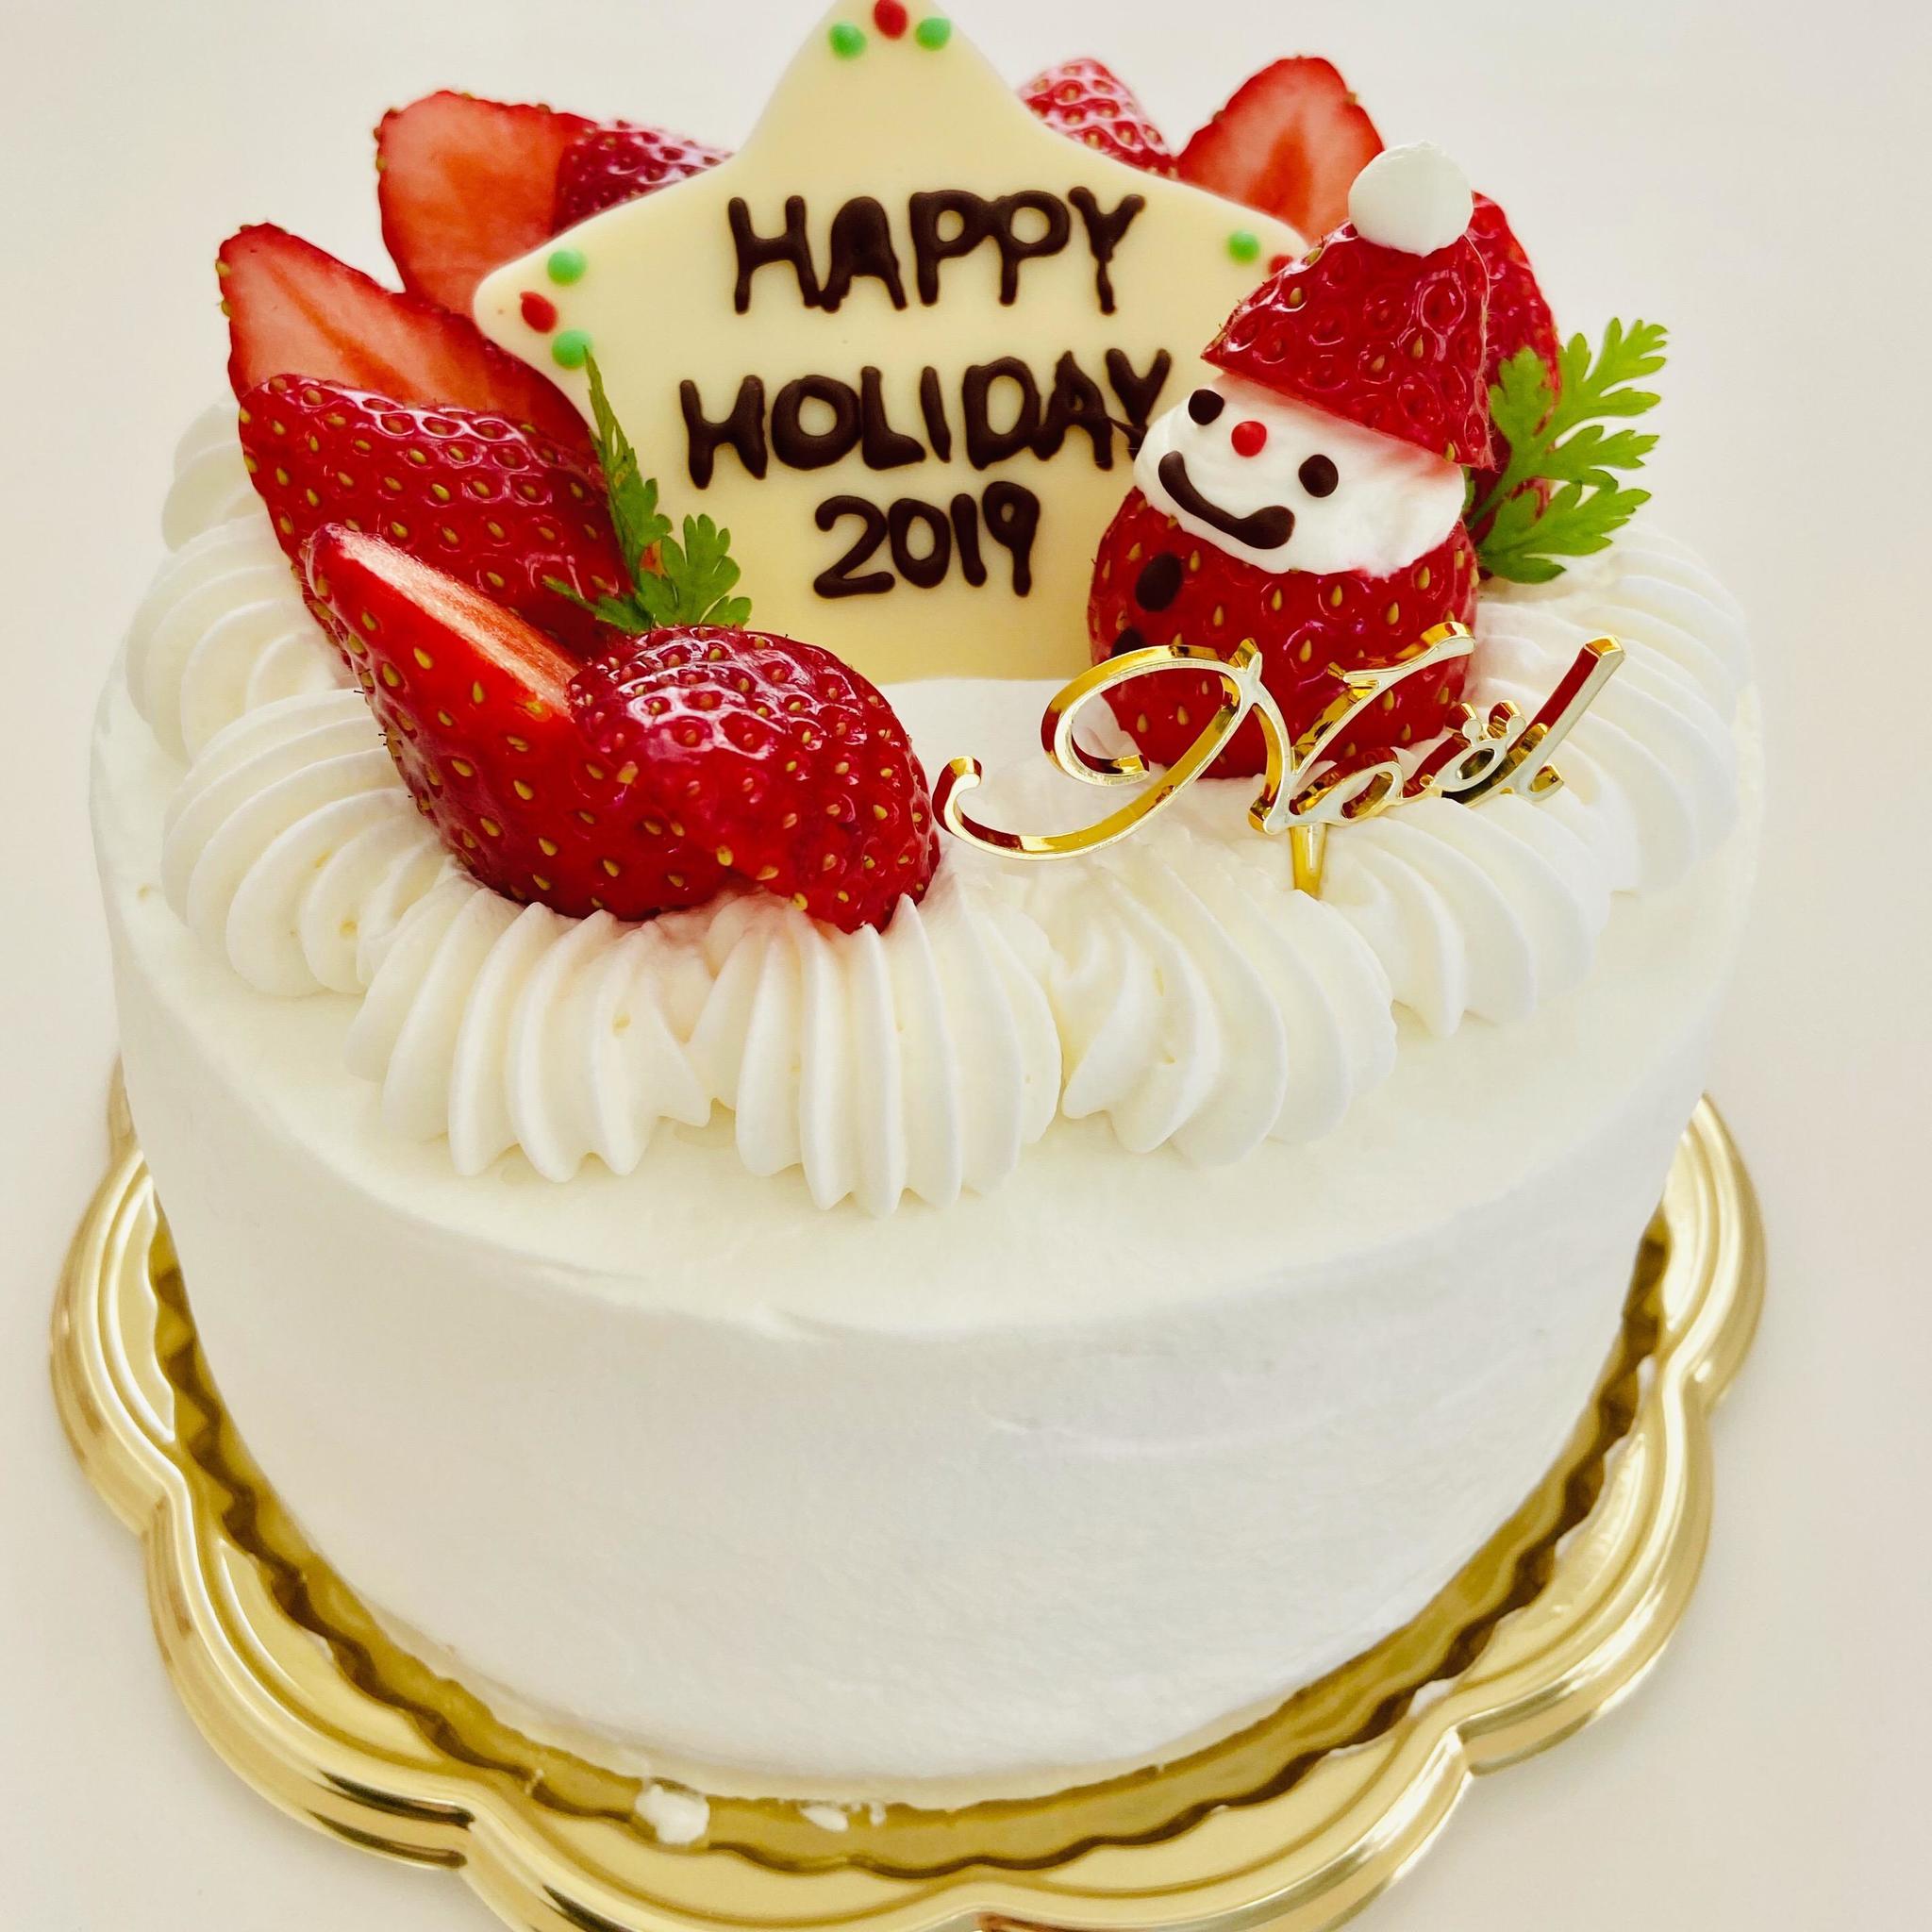 基本のいちごのクリスマスケーキ 開催 パティスリー301 茨城県龍ケ崎市 の21年3月レッスン情報 料理教室検索サイト クスパ